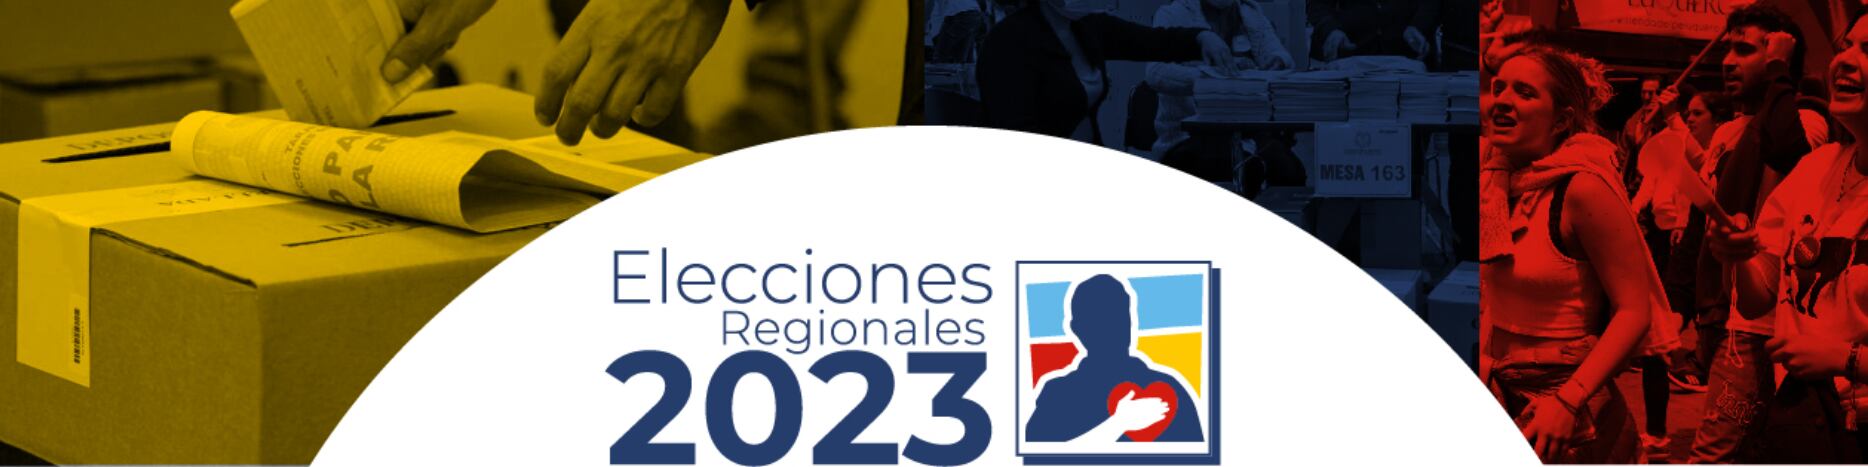 Centro Democrático elecciones territoriales 2023

Fuente: Pantallazo página Centro Democrático